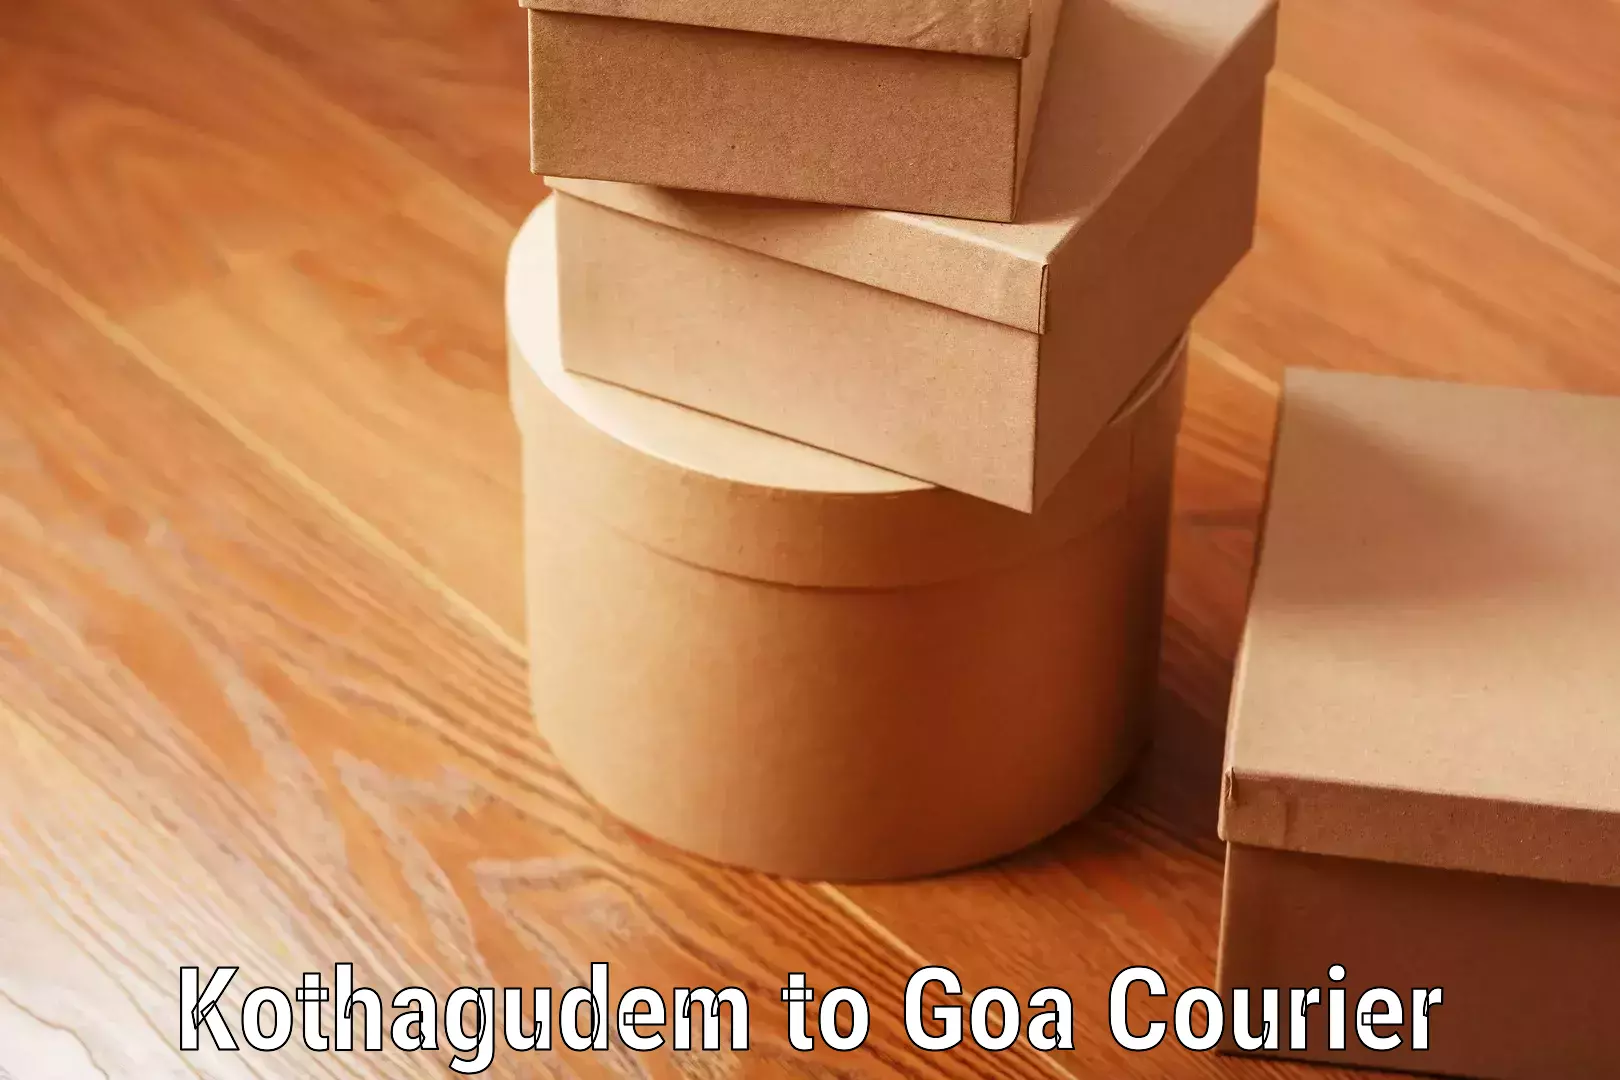 Door-to-door baggage service Kothagudem to IIT Goa